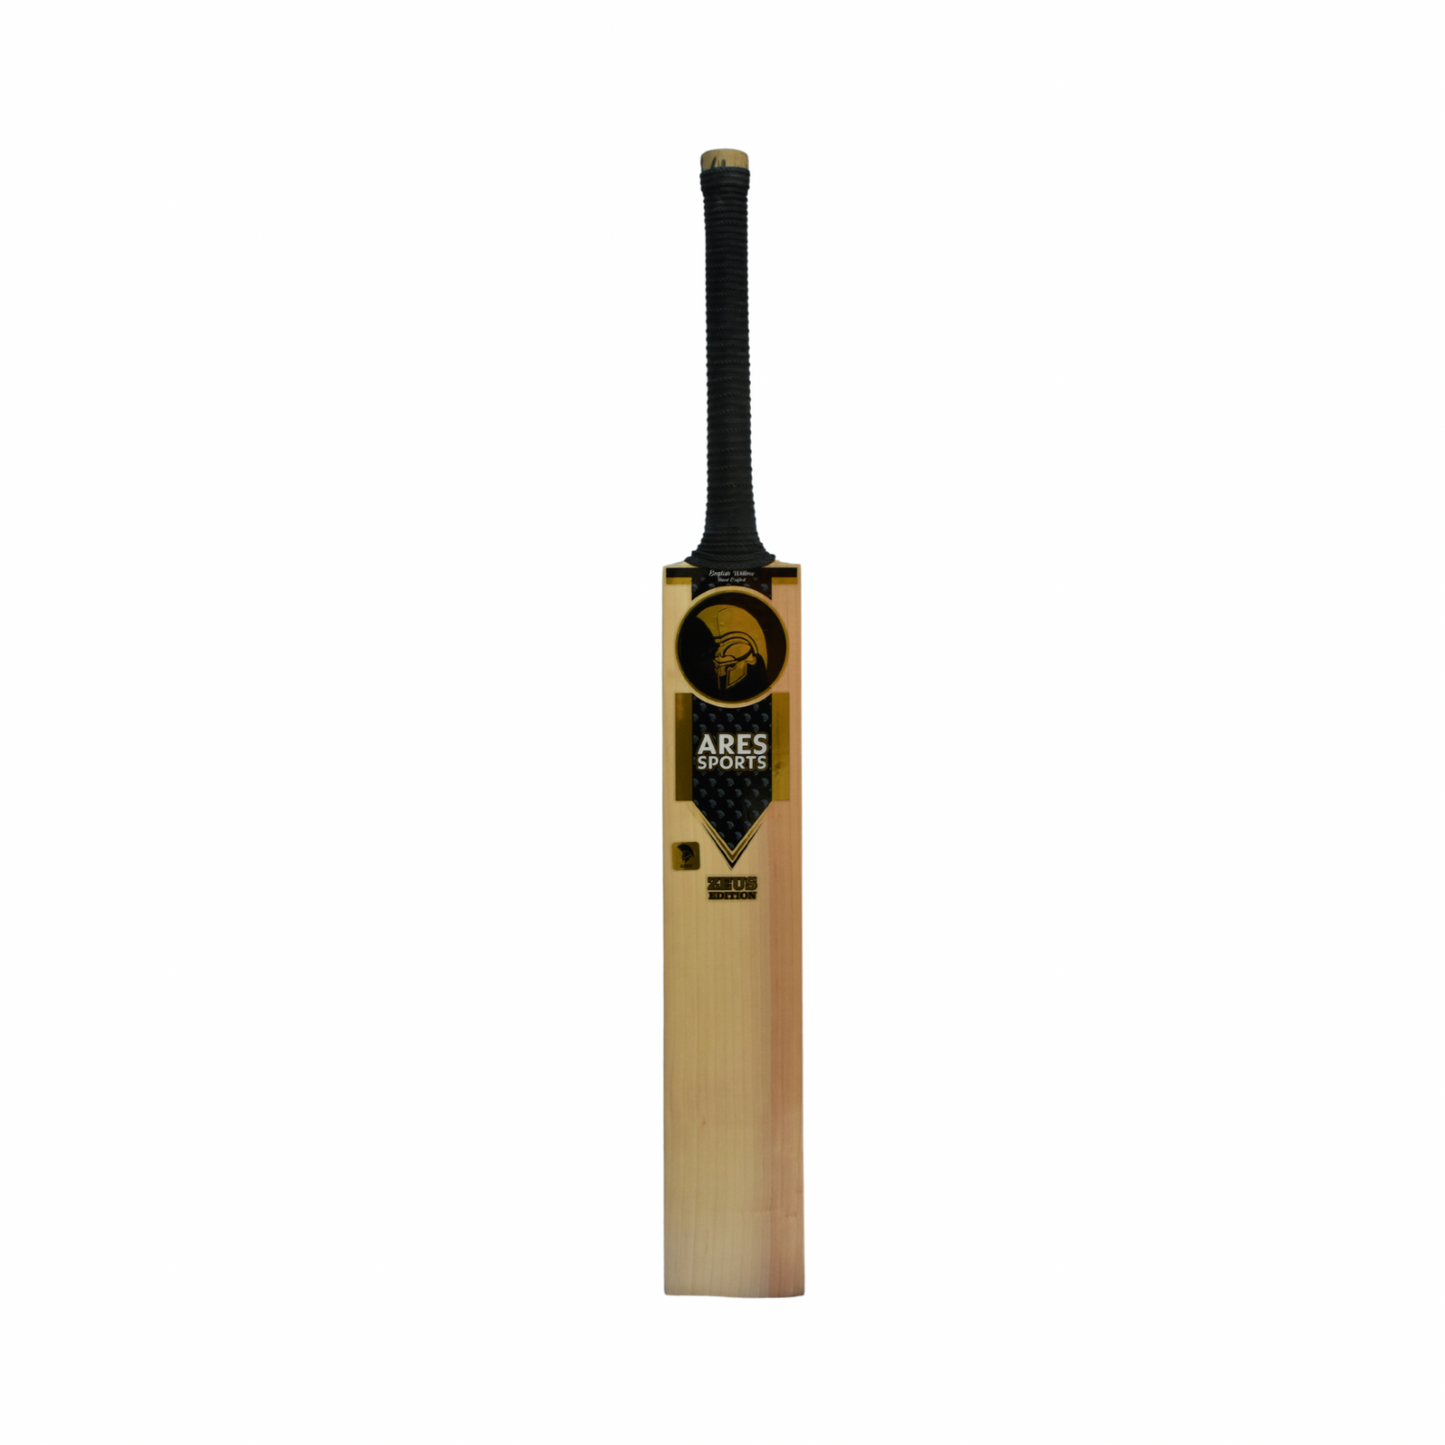 Ares Zeus Edition Cricket Bat - Junior Size Harrow (B)